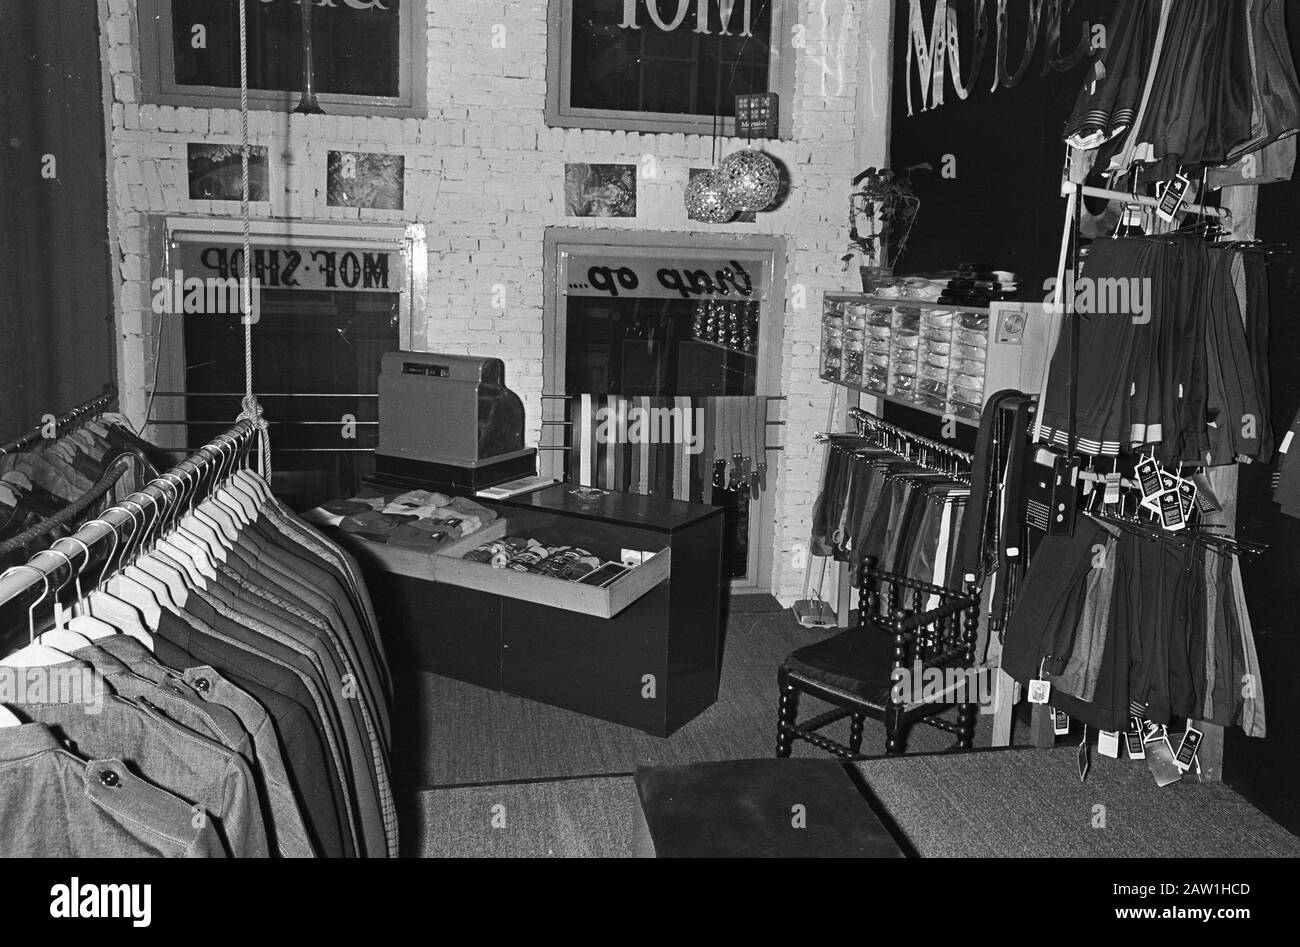 Misión Textilia. Tienda Haarlemmerdijk anotación: Tienda de ropa 'Tienda' 'de Mof '1885 ropa de y overalls) a la Haarlemmerdijk, su tiempo a mí Fecha: 14 de noviembre de 1967